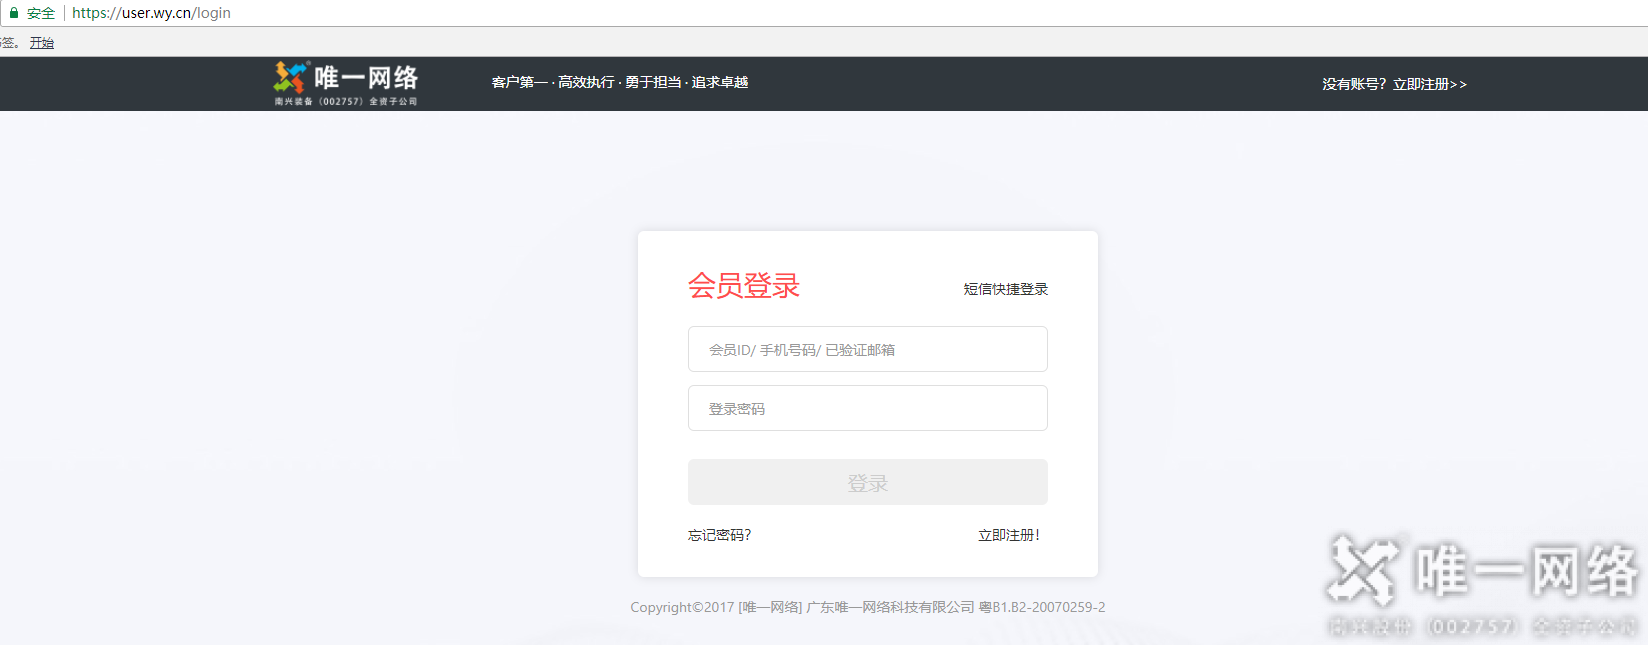 关于广州人民中电信机房启用域名白名单审计功能的通知